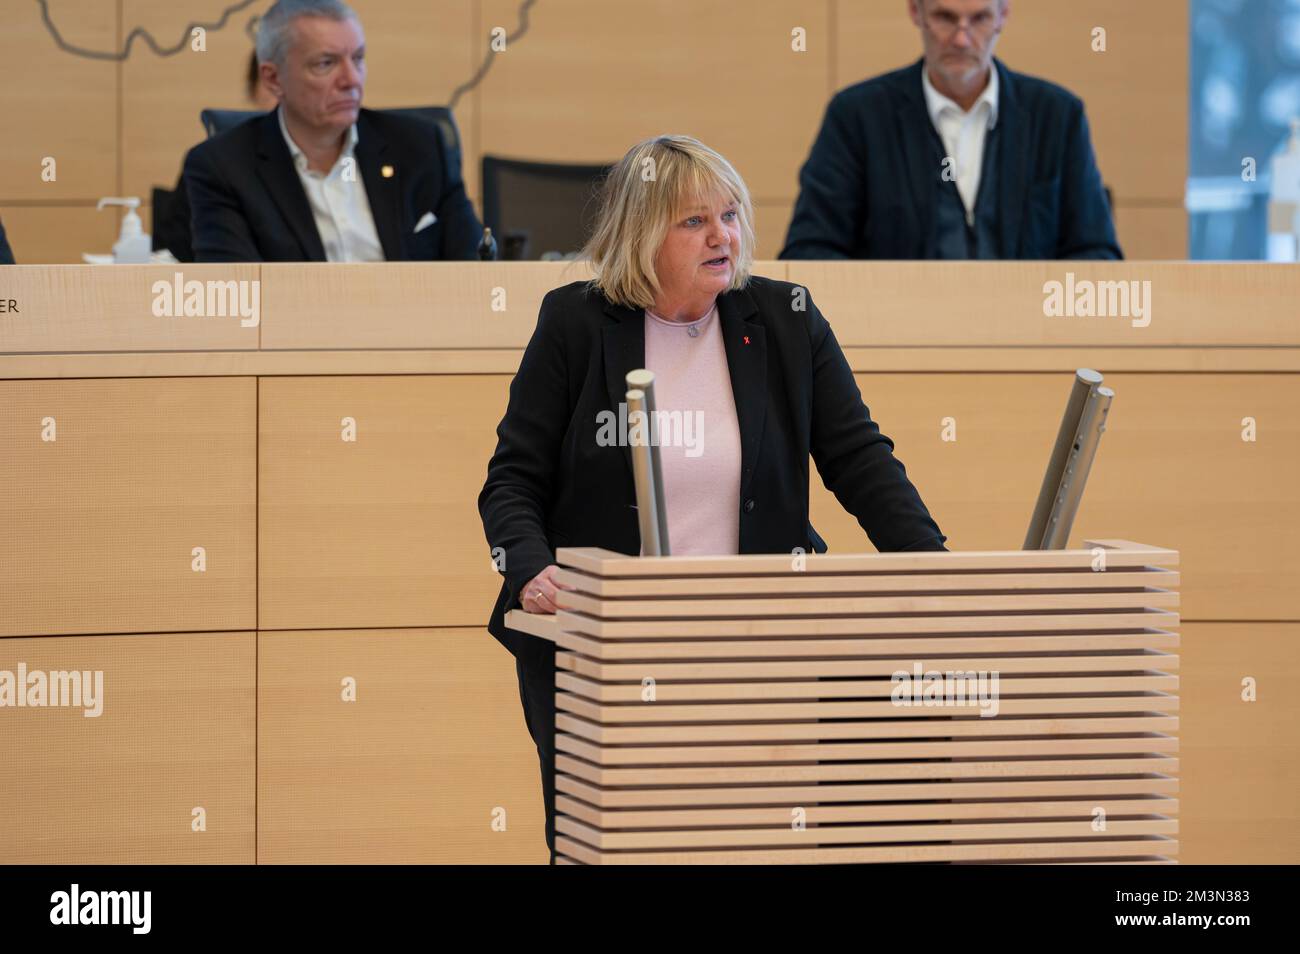 Plenarsitzung im Landeshaus Kiel die Abgeordnete Katja Rathje-Hoffmann bei Ihrer Rede Stock Photo